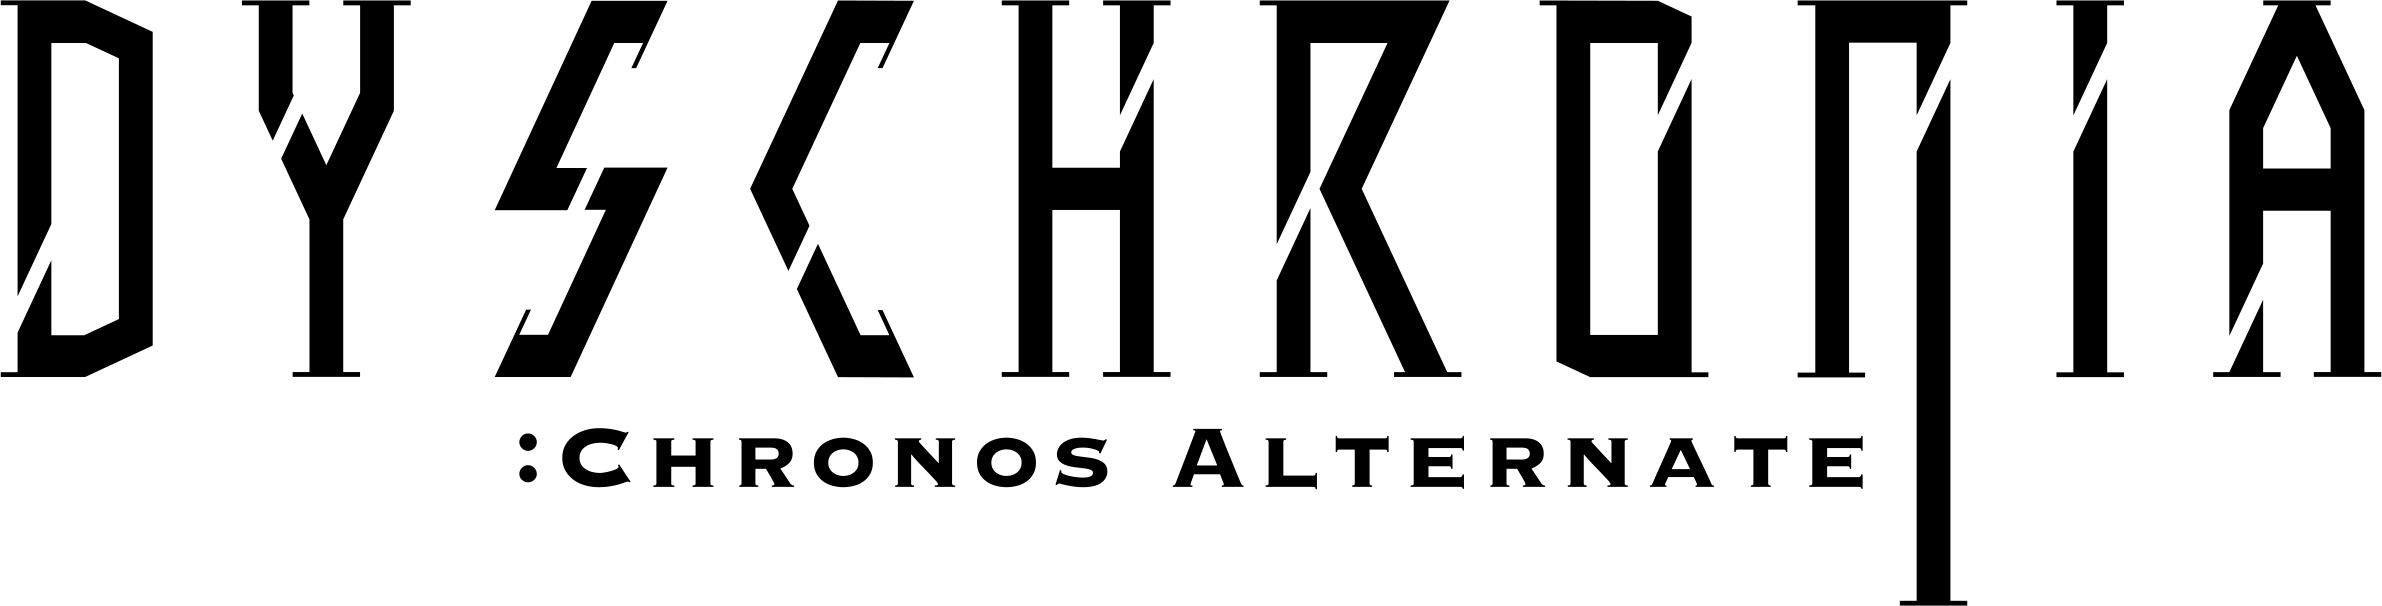 Dyschroniaロゴ